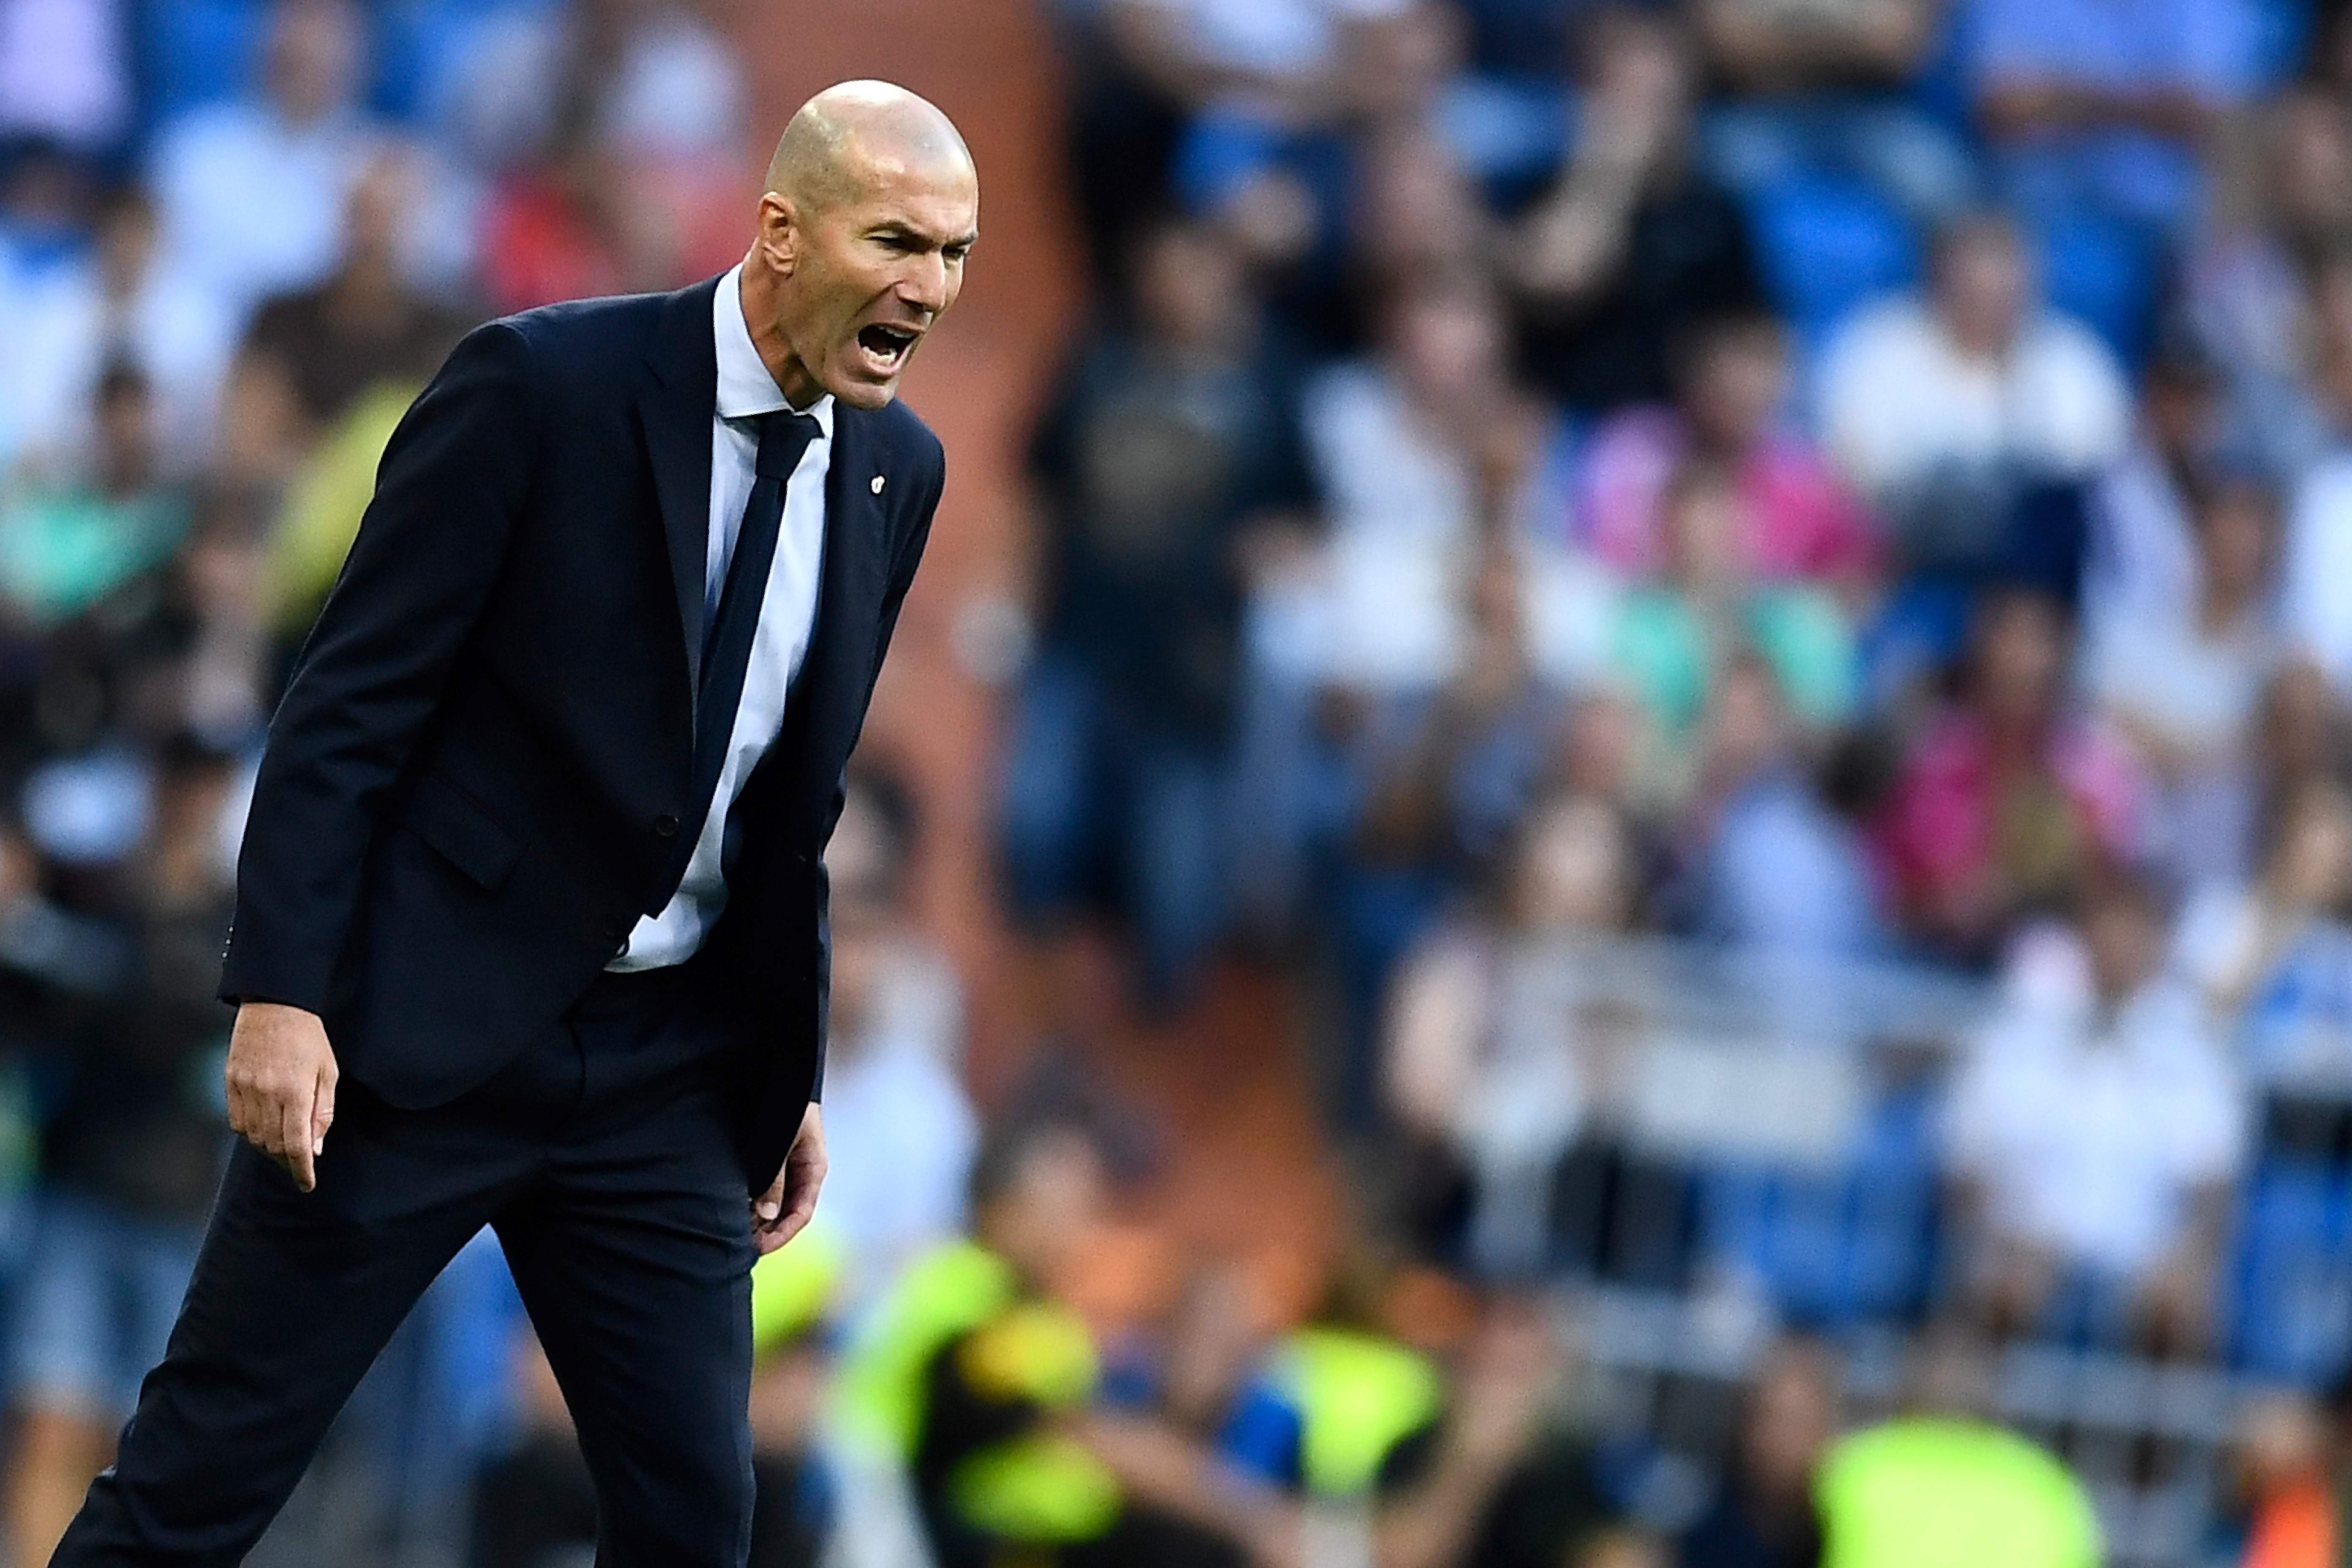 El entrenador del Real Madrid, Zinedine Zidane, es uno de los entrenadores  más carismáticos. (Foto Prensa Libre: AFP)